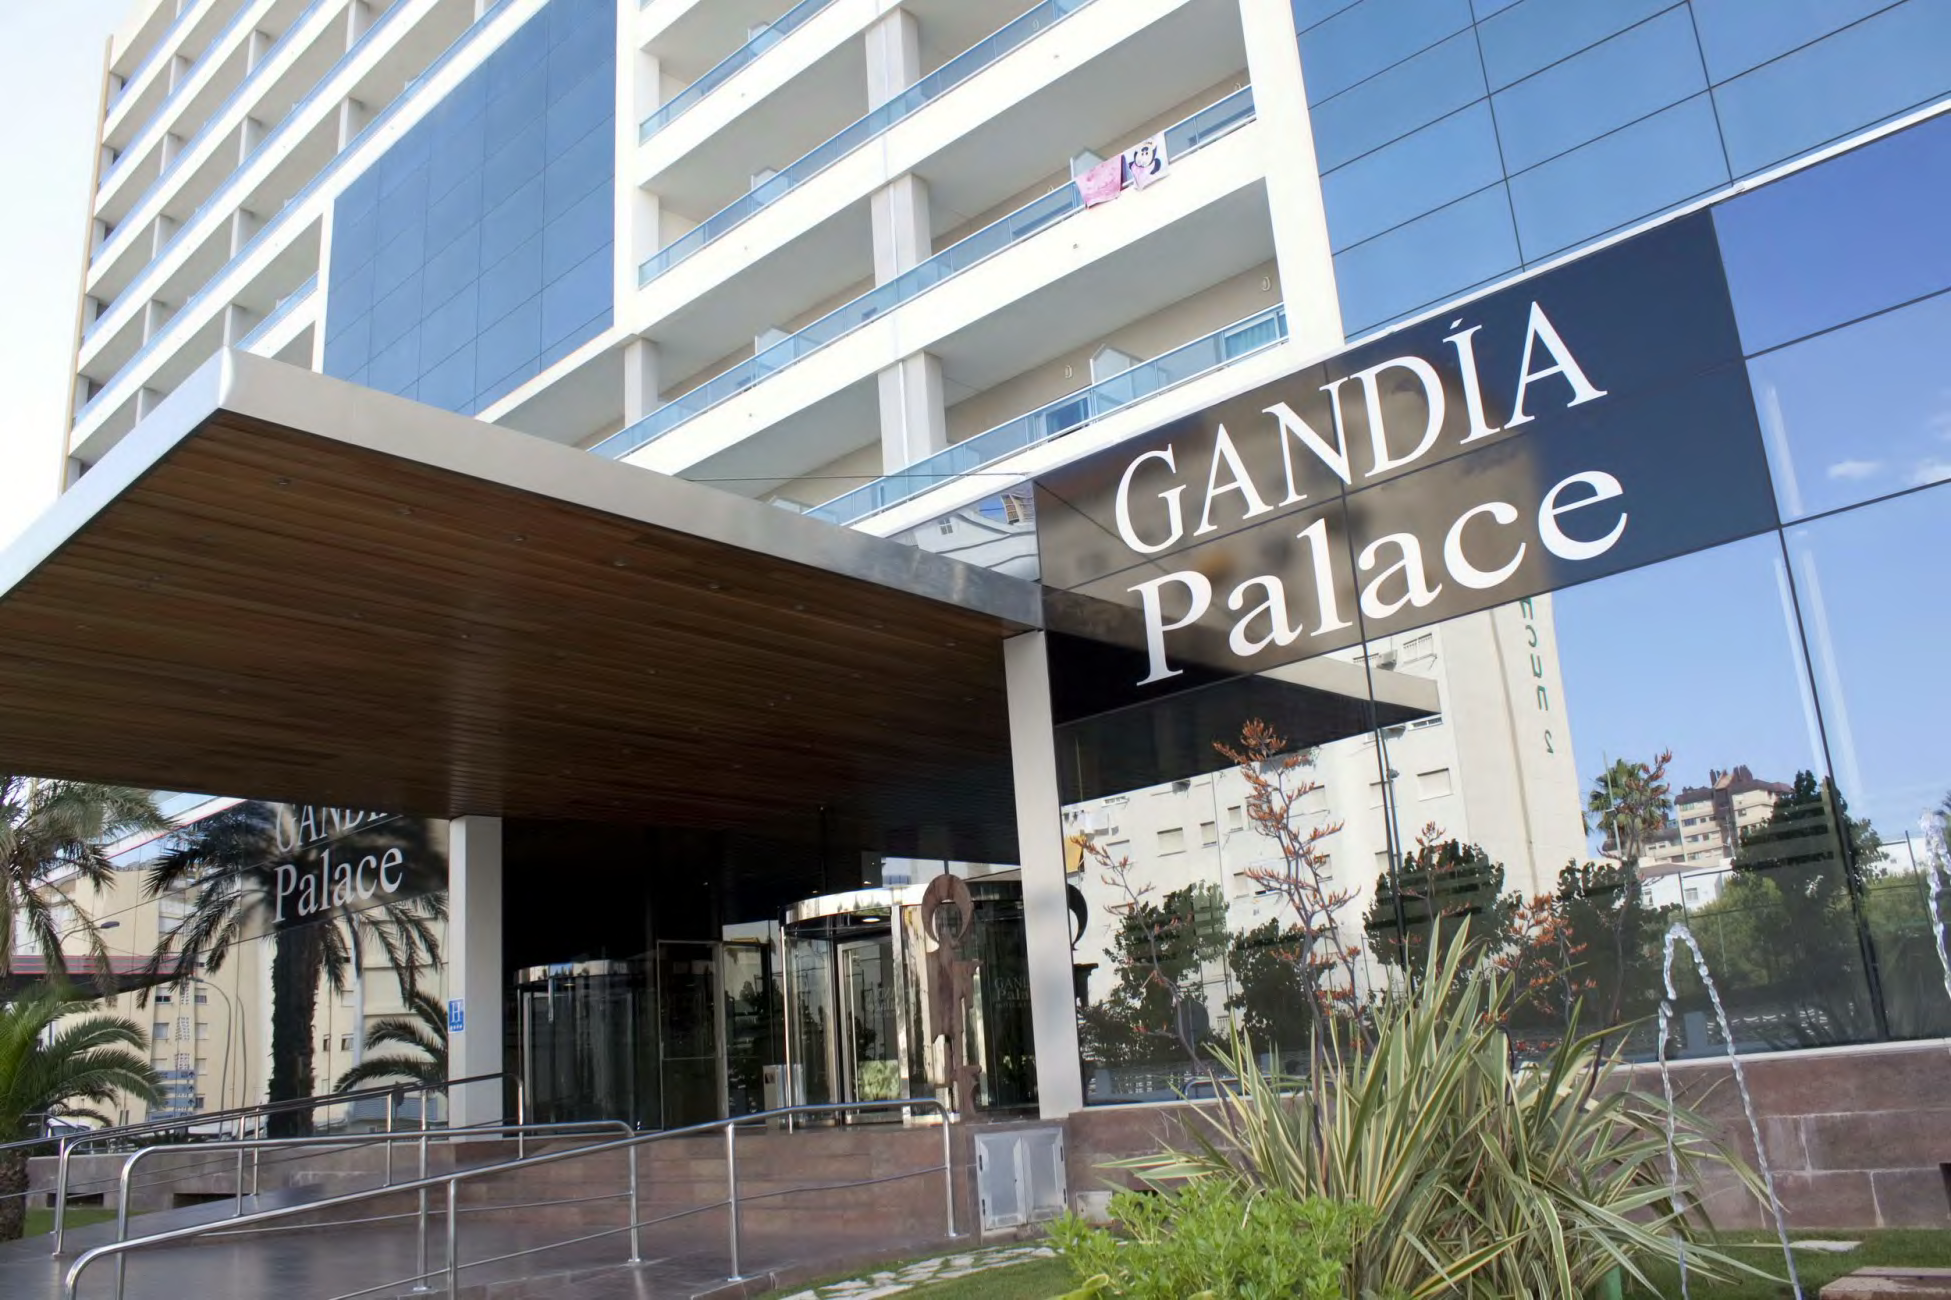 Hotel Gandia Palace